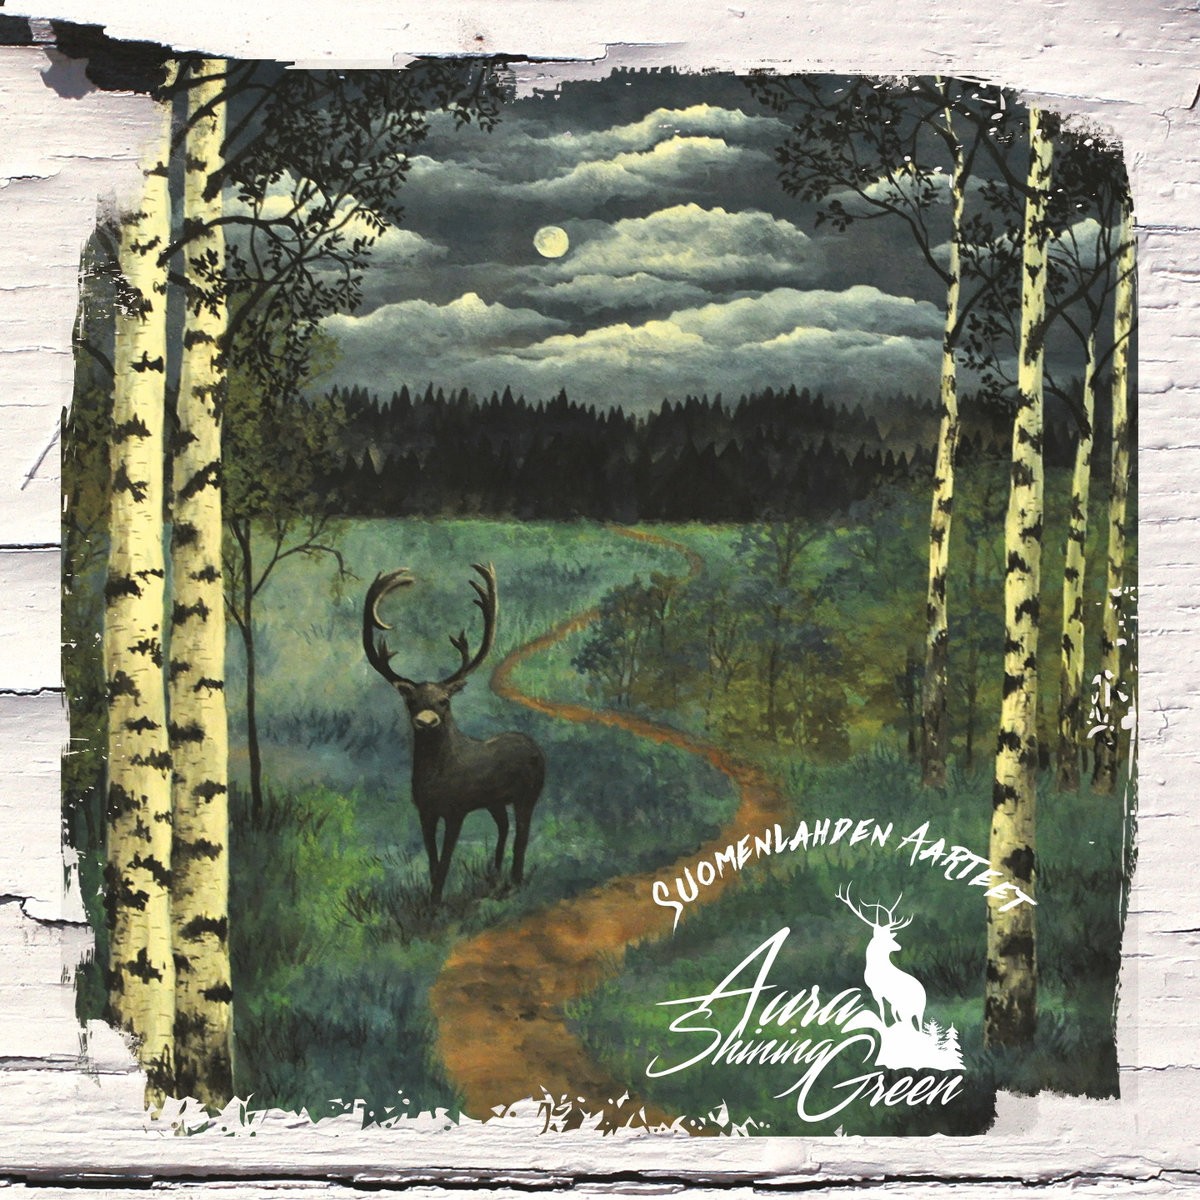 AURA SHINING GREEN -  Suomenlahden Aarteet  2-CD